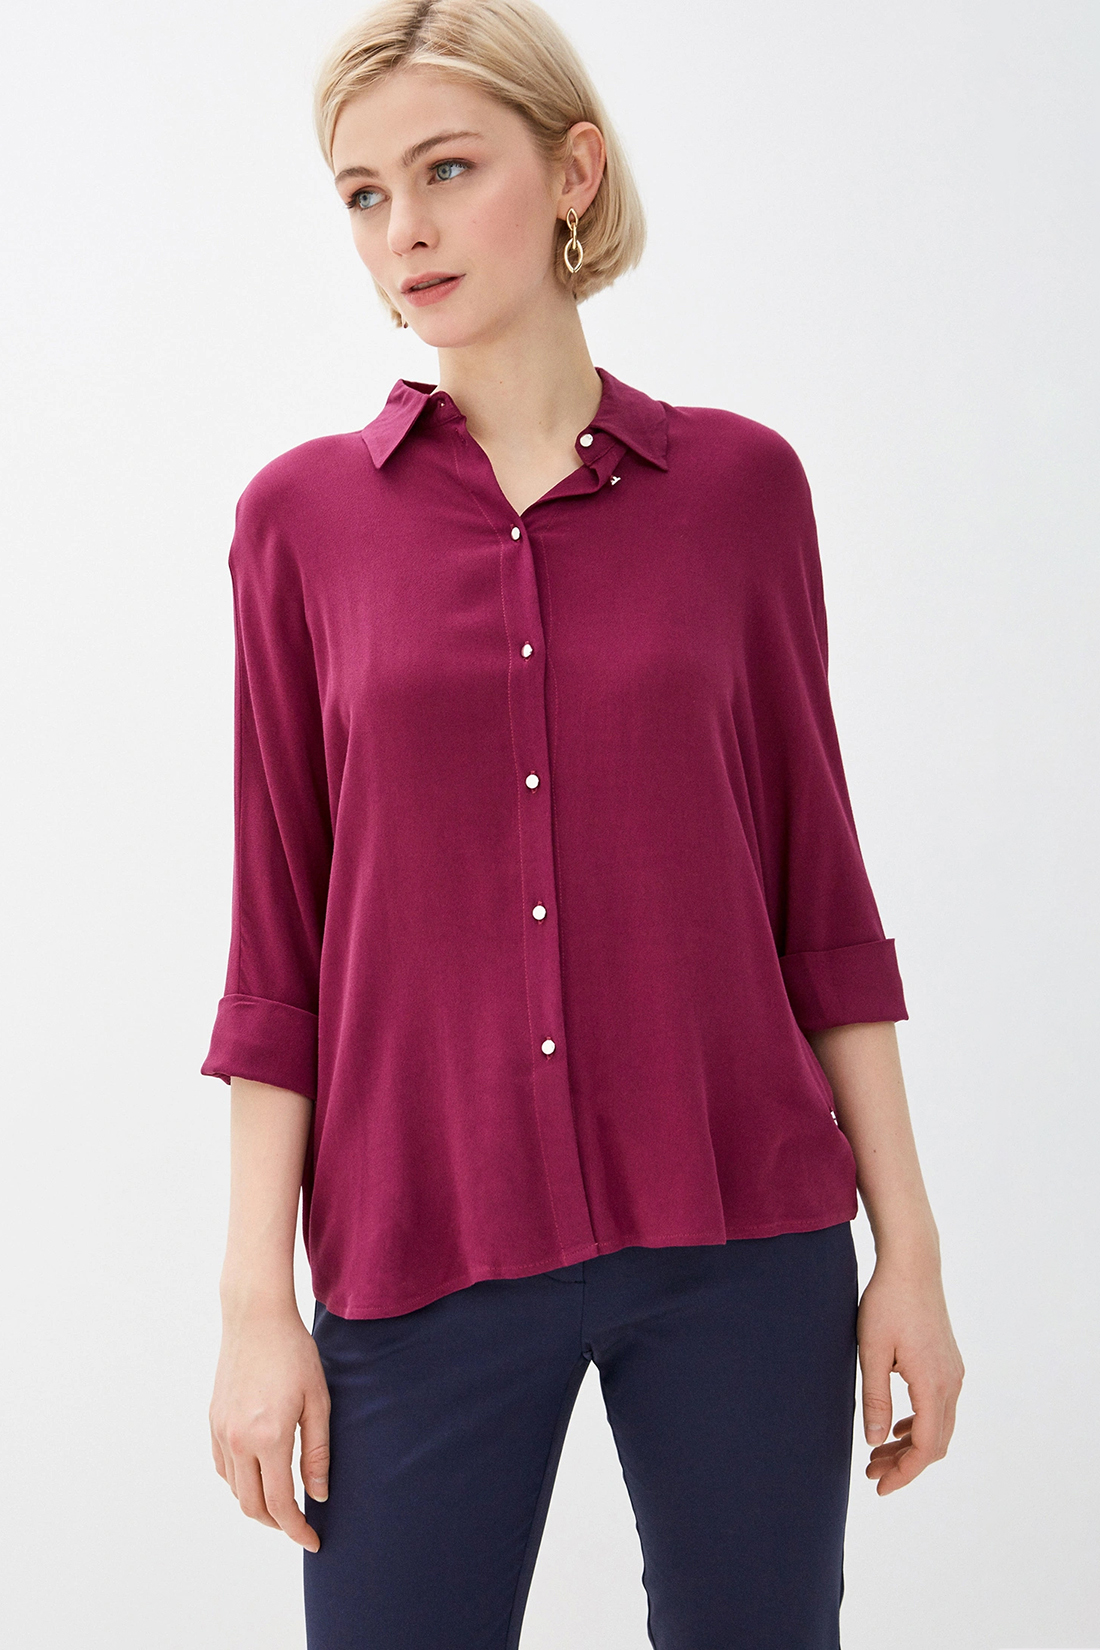 Рубашка в стиле оверсайз (арт. baon B170012), размер XXL, цвет красный Рубашка в стиле оверсайз (арт. baon B170012) - фото 1